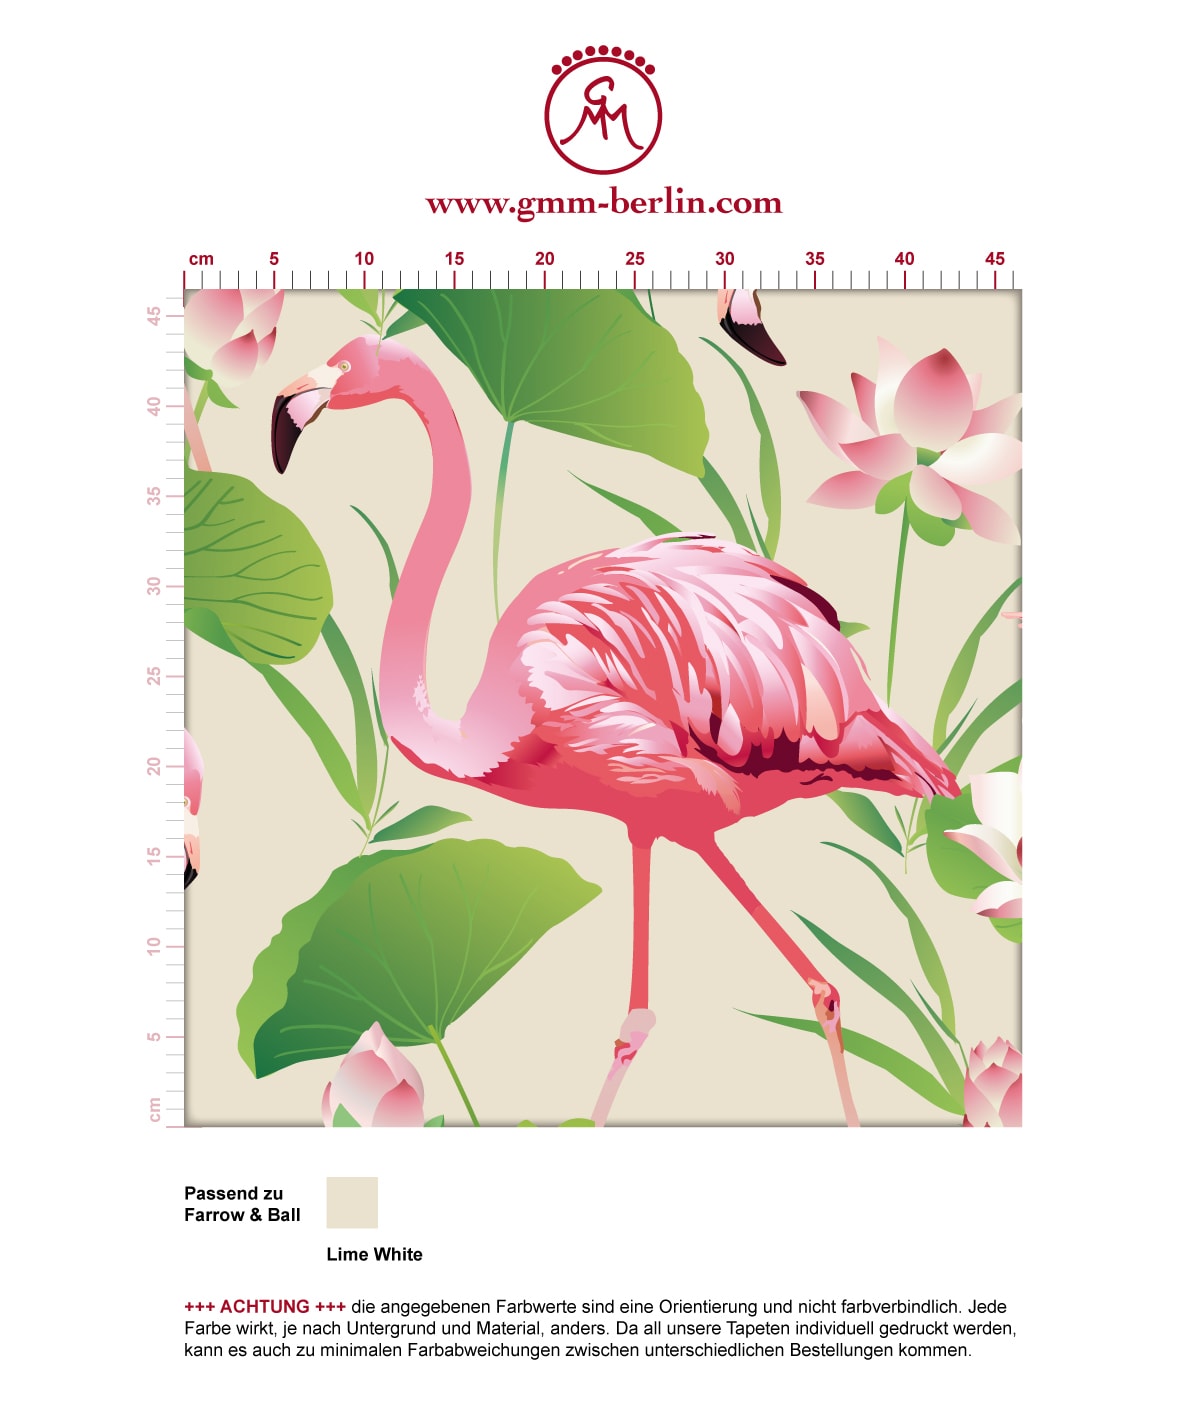 Exotische Tapete "Flamingo Pool" mit Seerosen im extravaganten Look auf weiß angepasst an Farrow and Ball Wandfarben. Aus dem GMM-BERLIN.com Sortiment: Schöne Tapeten in creme Farbe